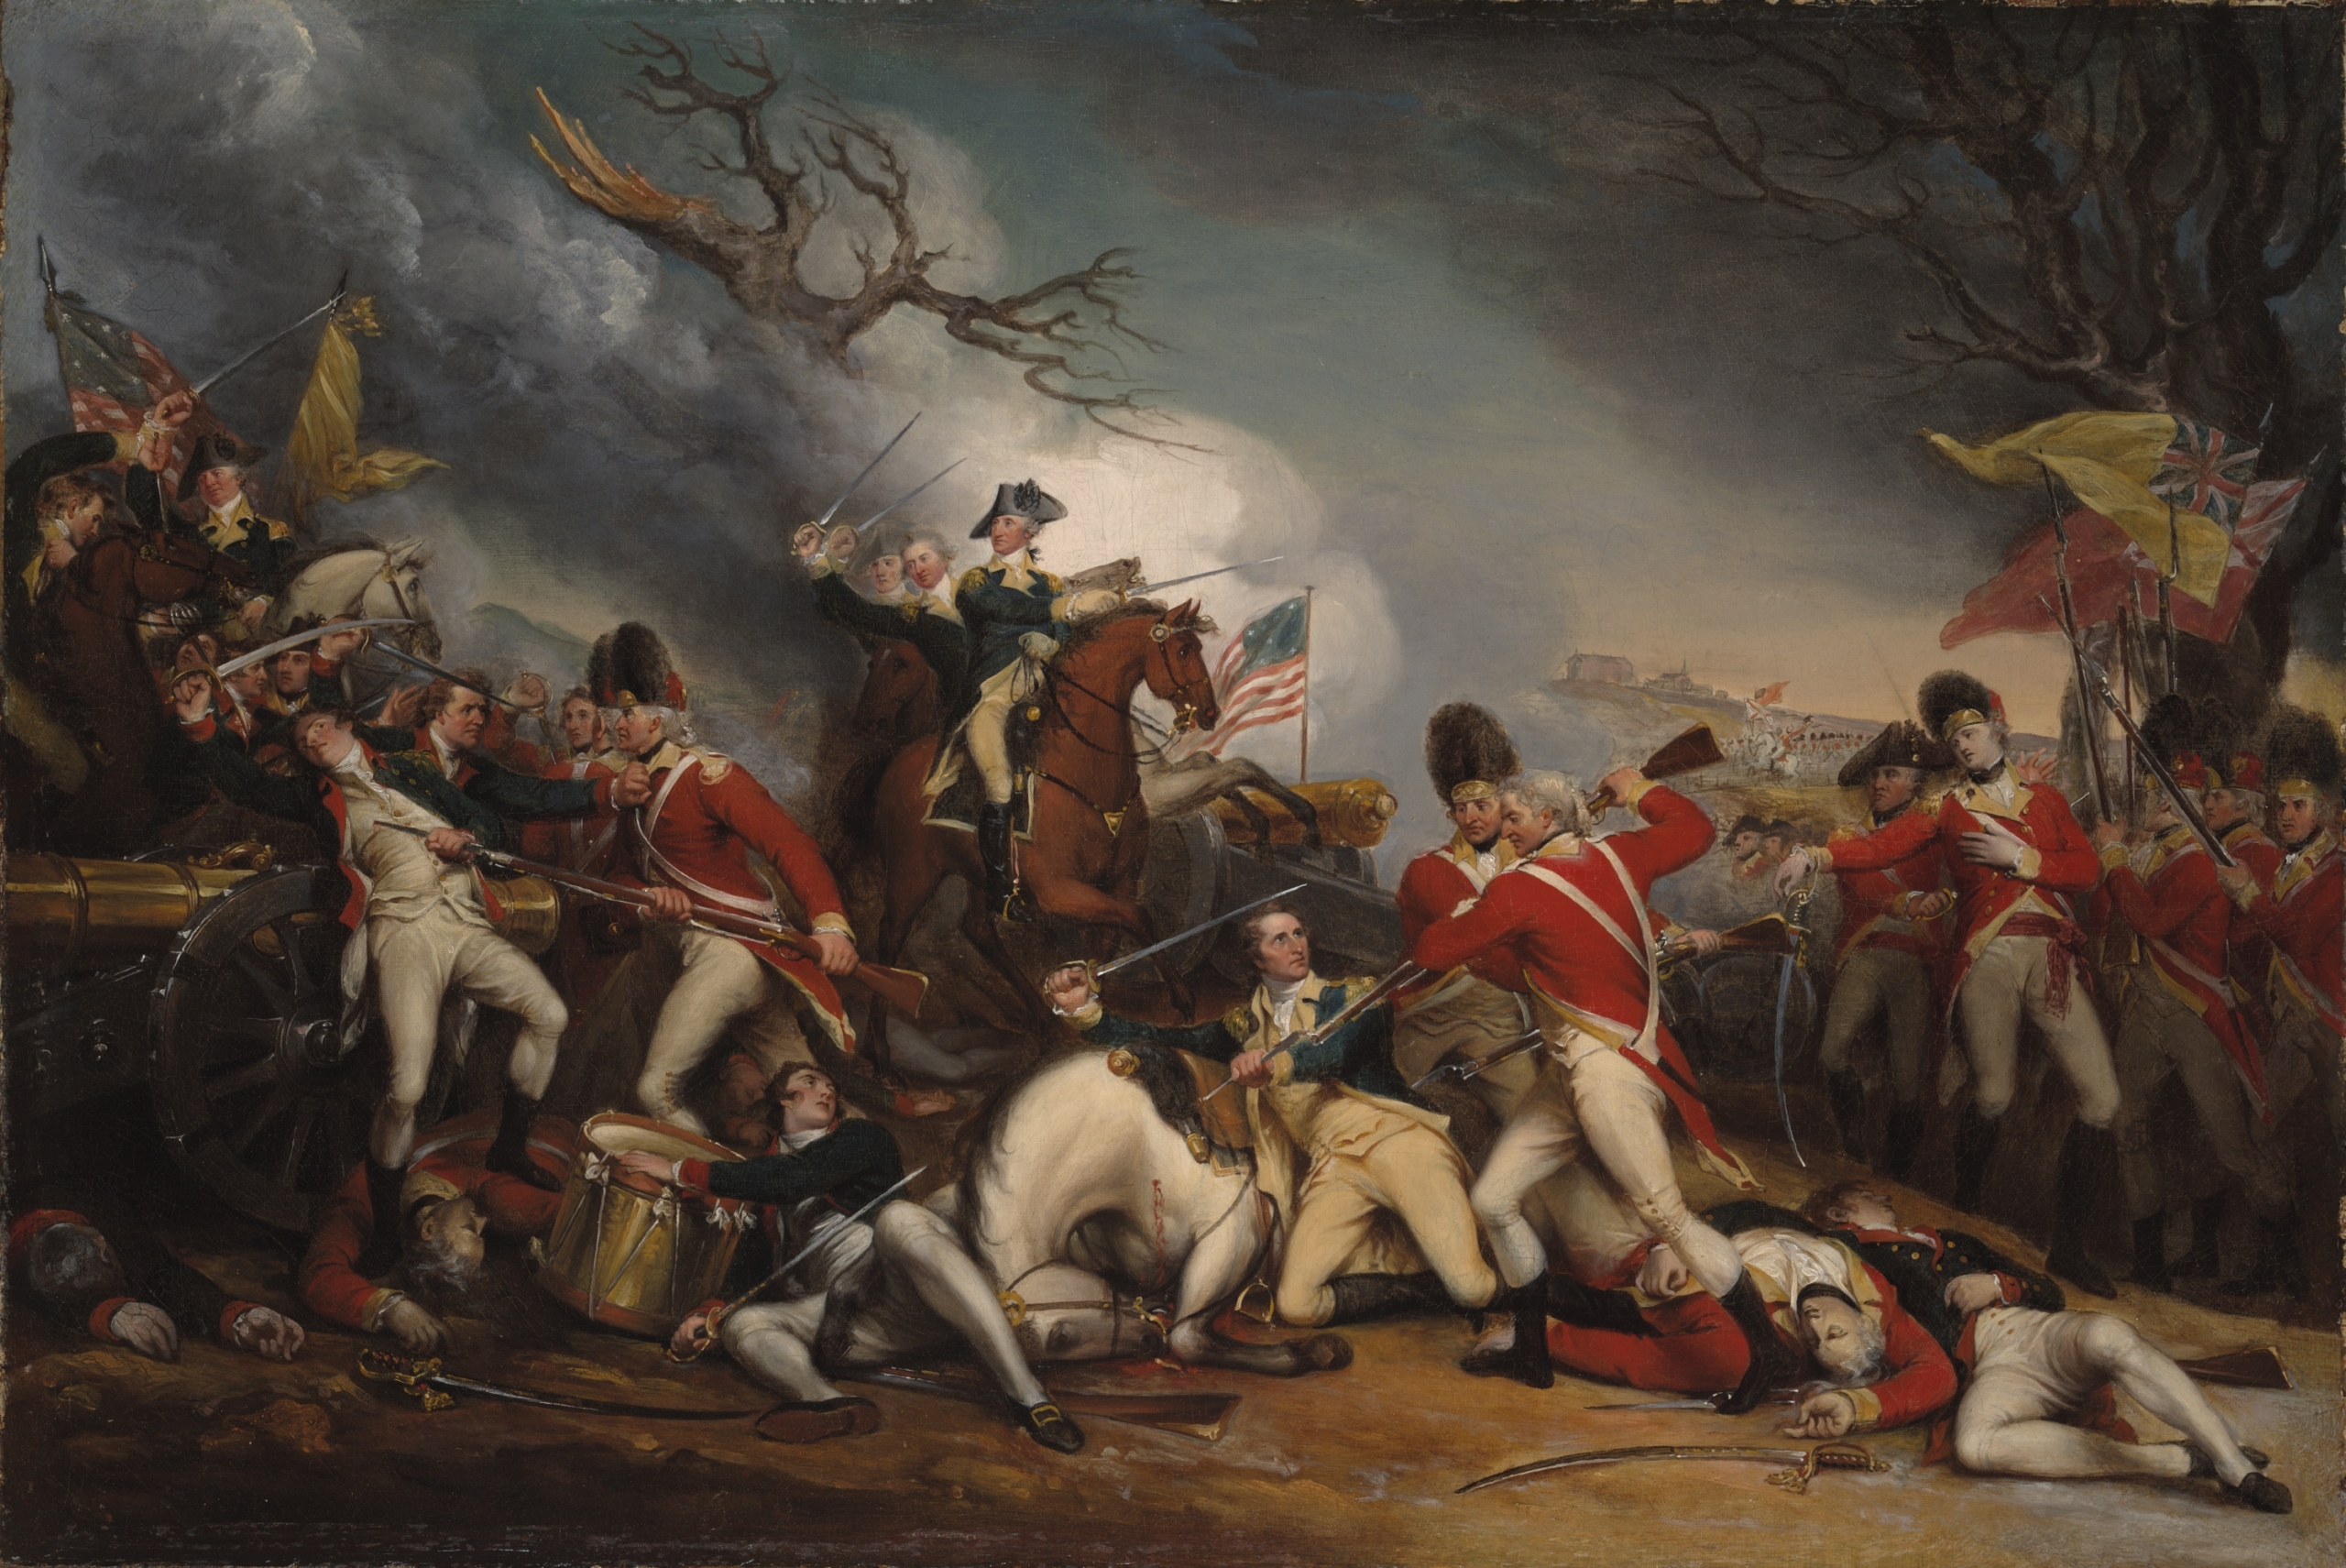 Bức tranh sơn dầu “Cái chết của Tướng Mercer” (The Death of General Mercer at the Battle of Princeton) của họa sĩ người Mỹ, John Trumbull. (Ảnh: Tài sản công)